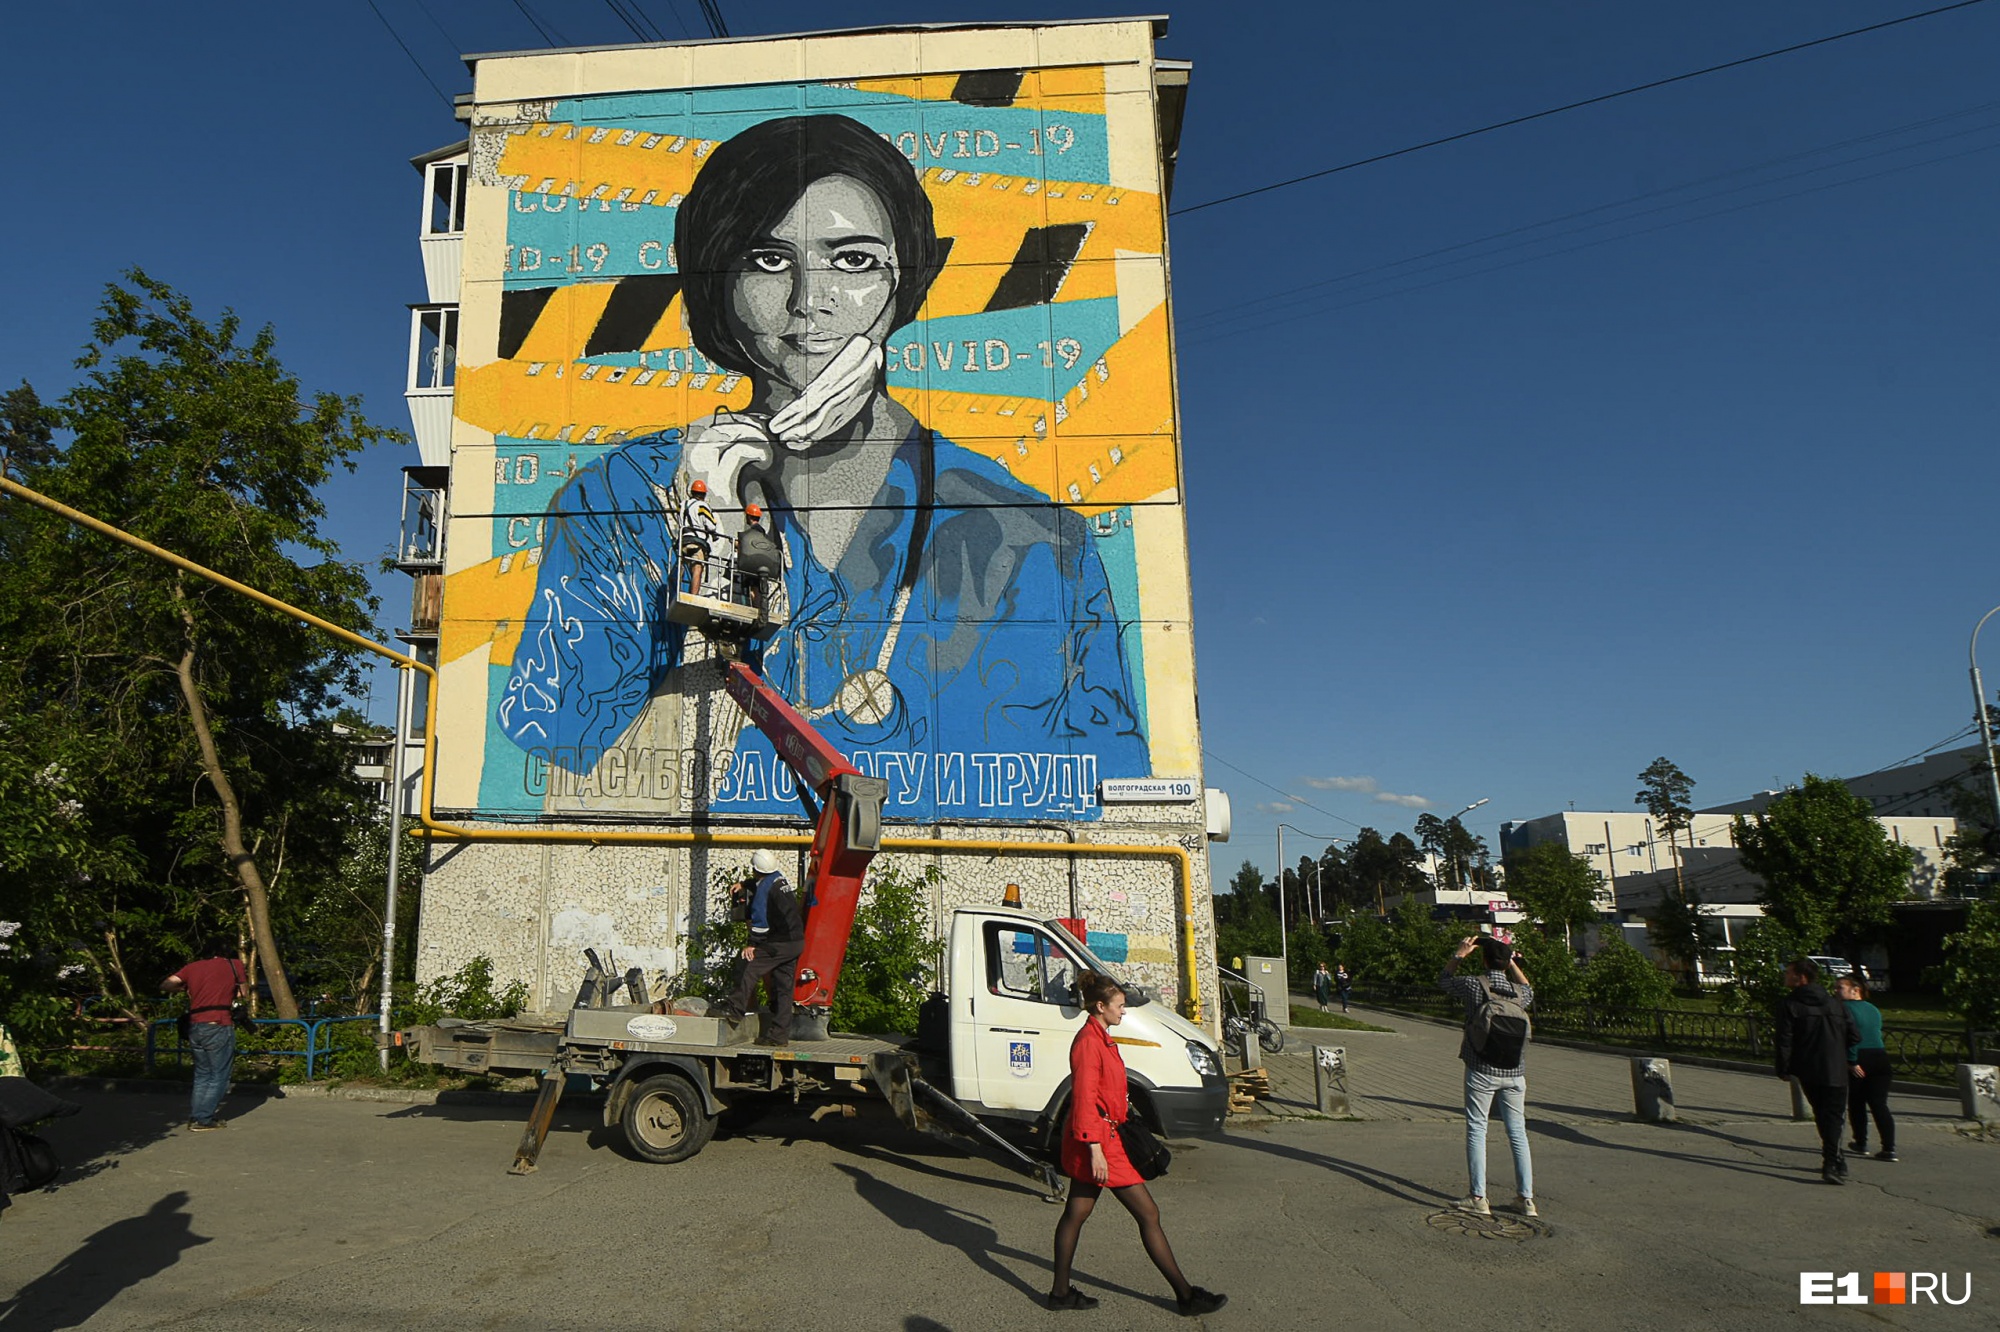 «Спасибо за отвагу и труд»: в Екатеринбурге завершилась работа над граффити с благодарностью врачам